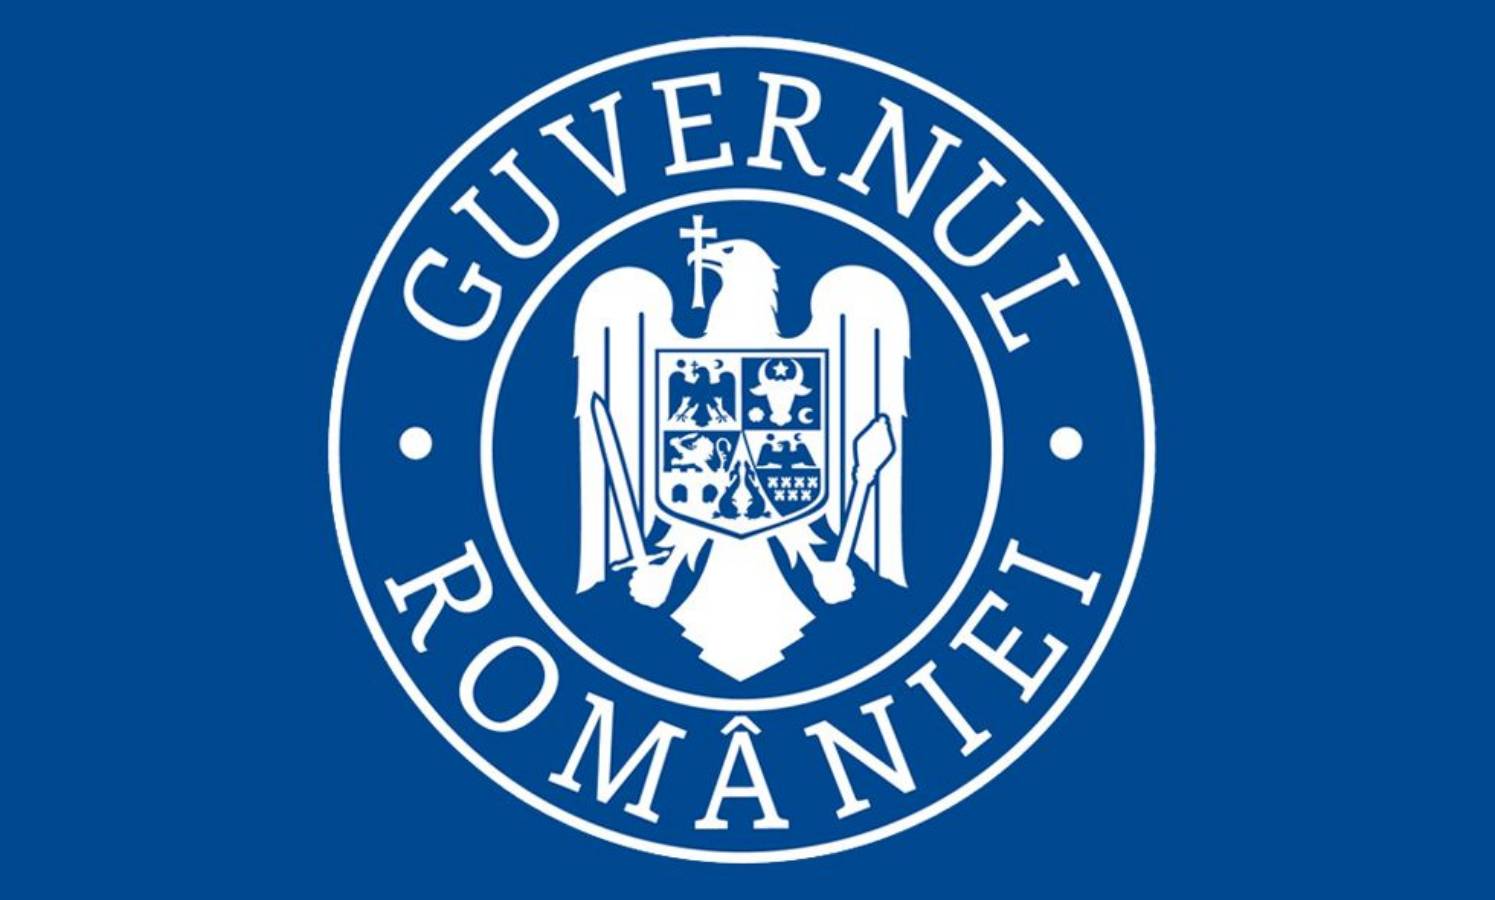 Casos diarios estimados por el gobierno rumano